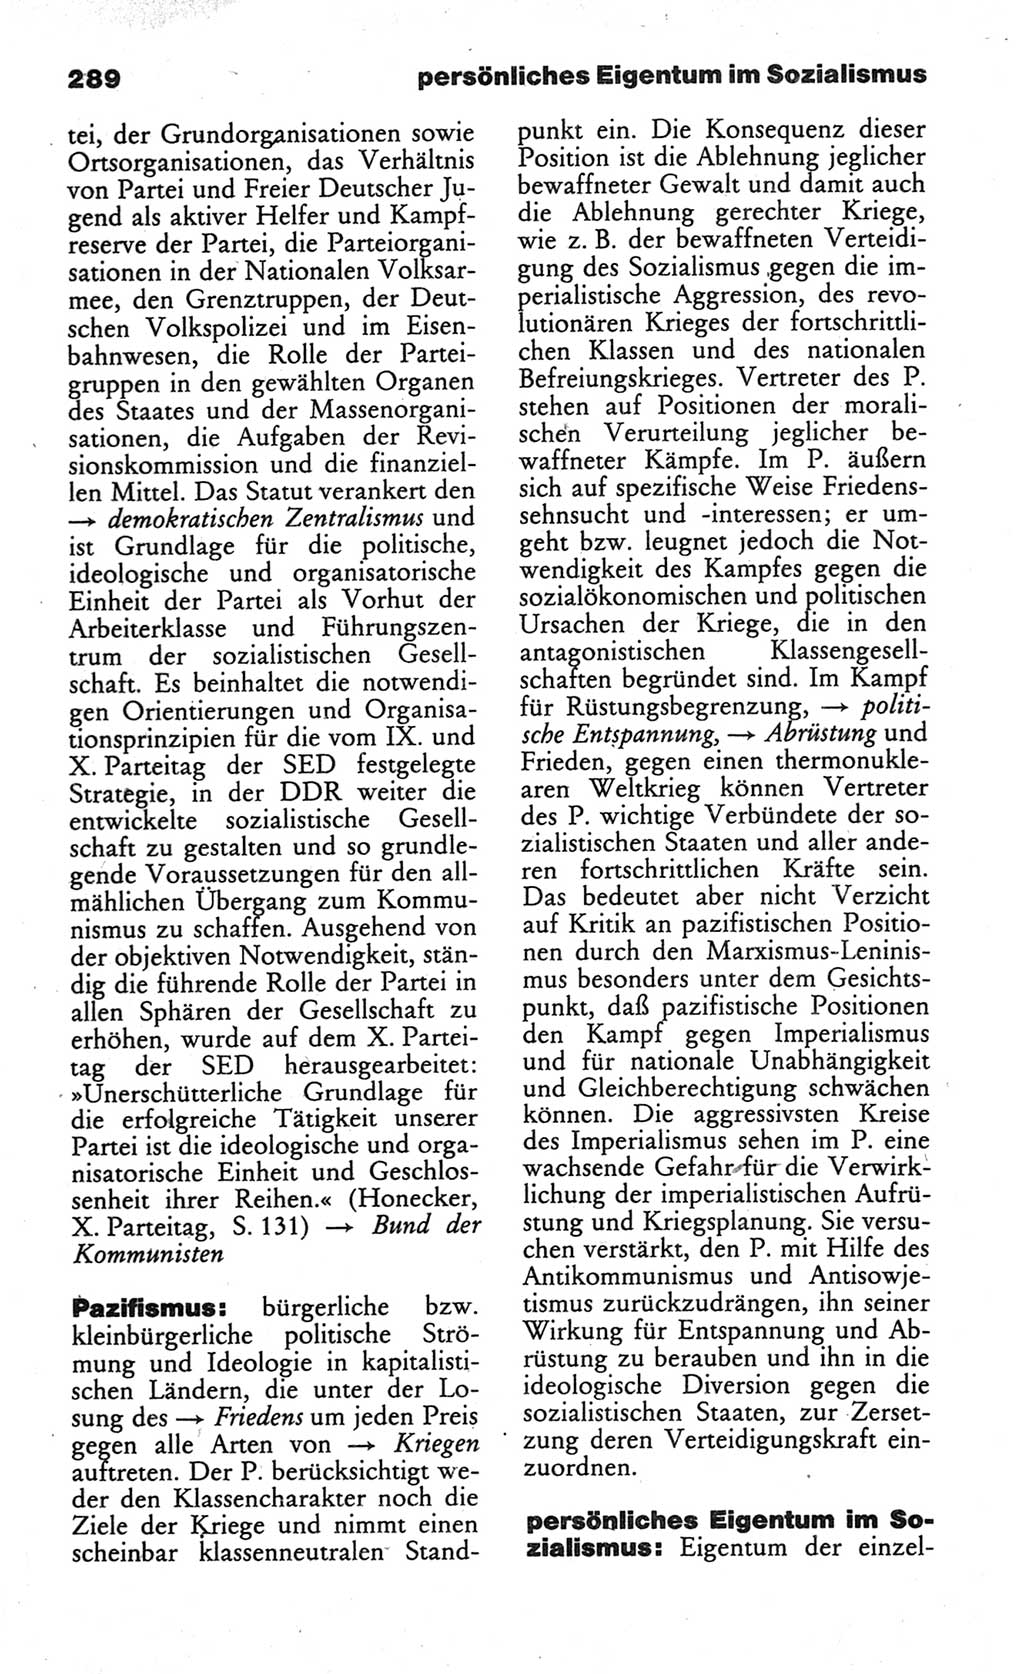 Wörterbuch des wissenschaftlichen Kommunismus [Deutsche Demokratische Republik (DDR)] 1984, Seite 289 (Wb. wiss. Komm. DDR 1984, S. 289)